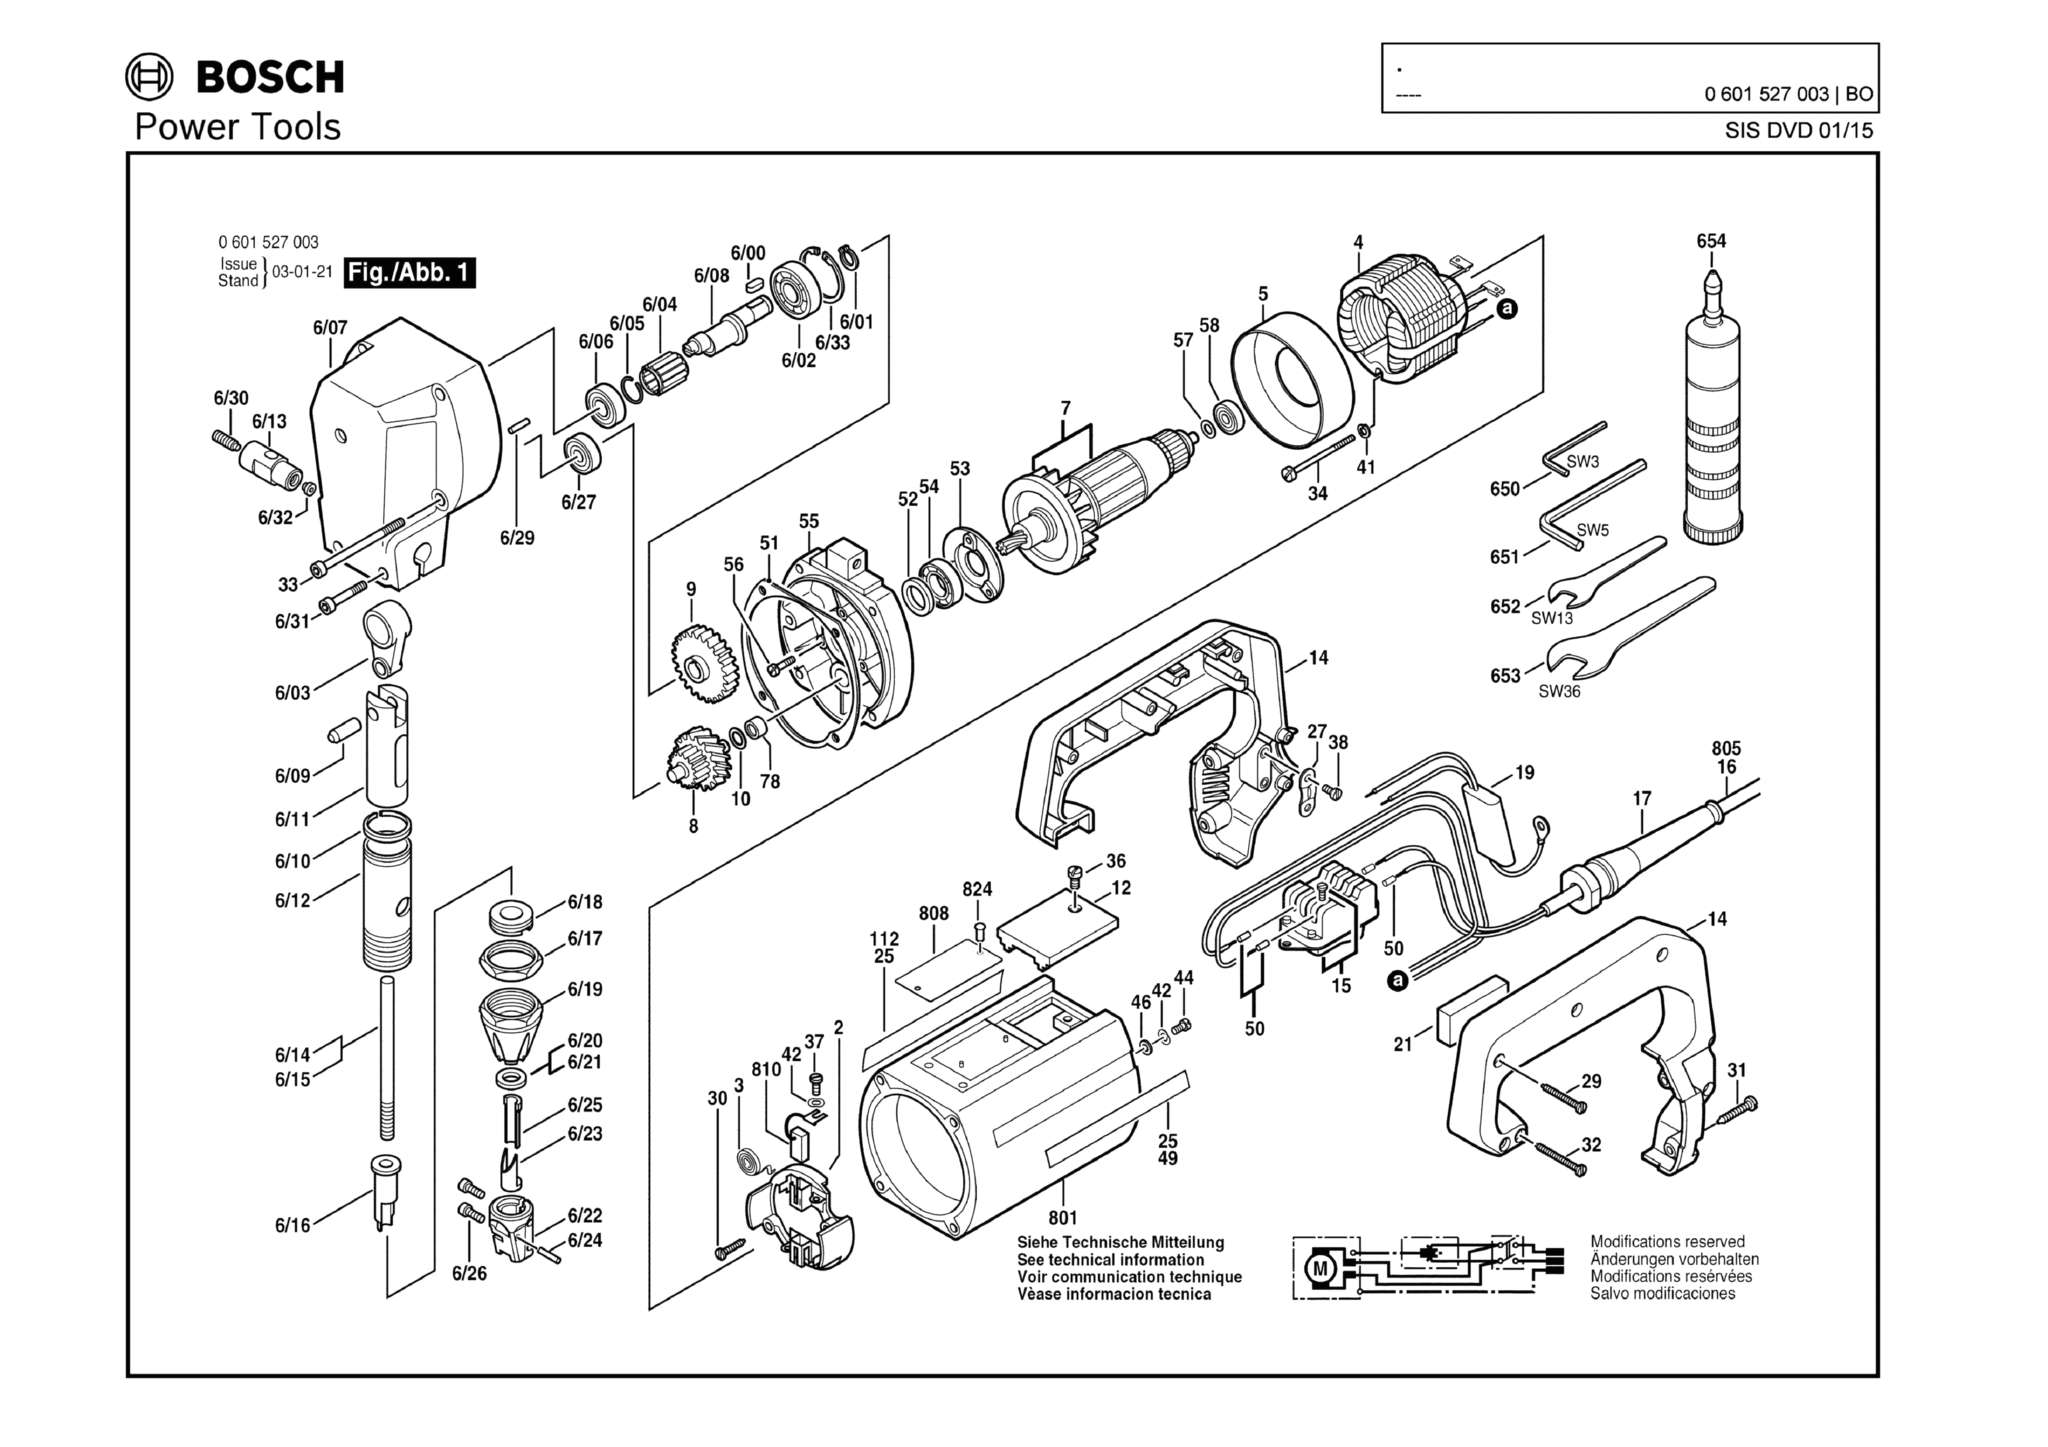 Запчасти, схема и деталировка Bosch (ТИП 0601527003)